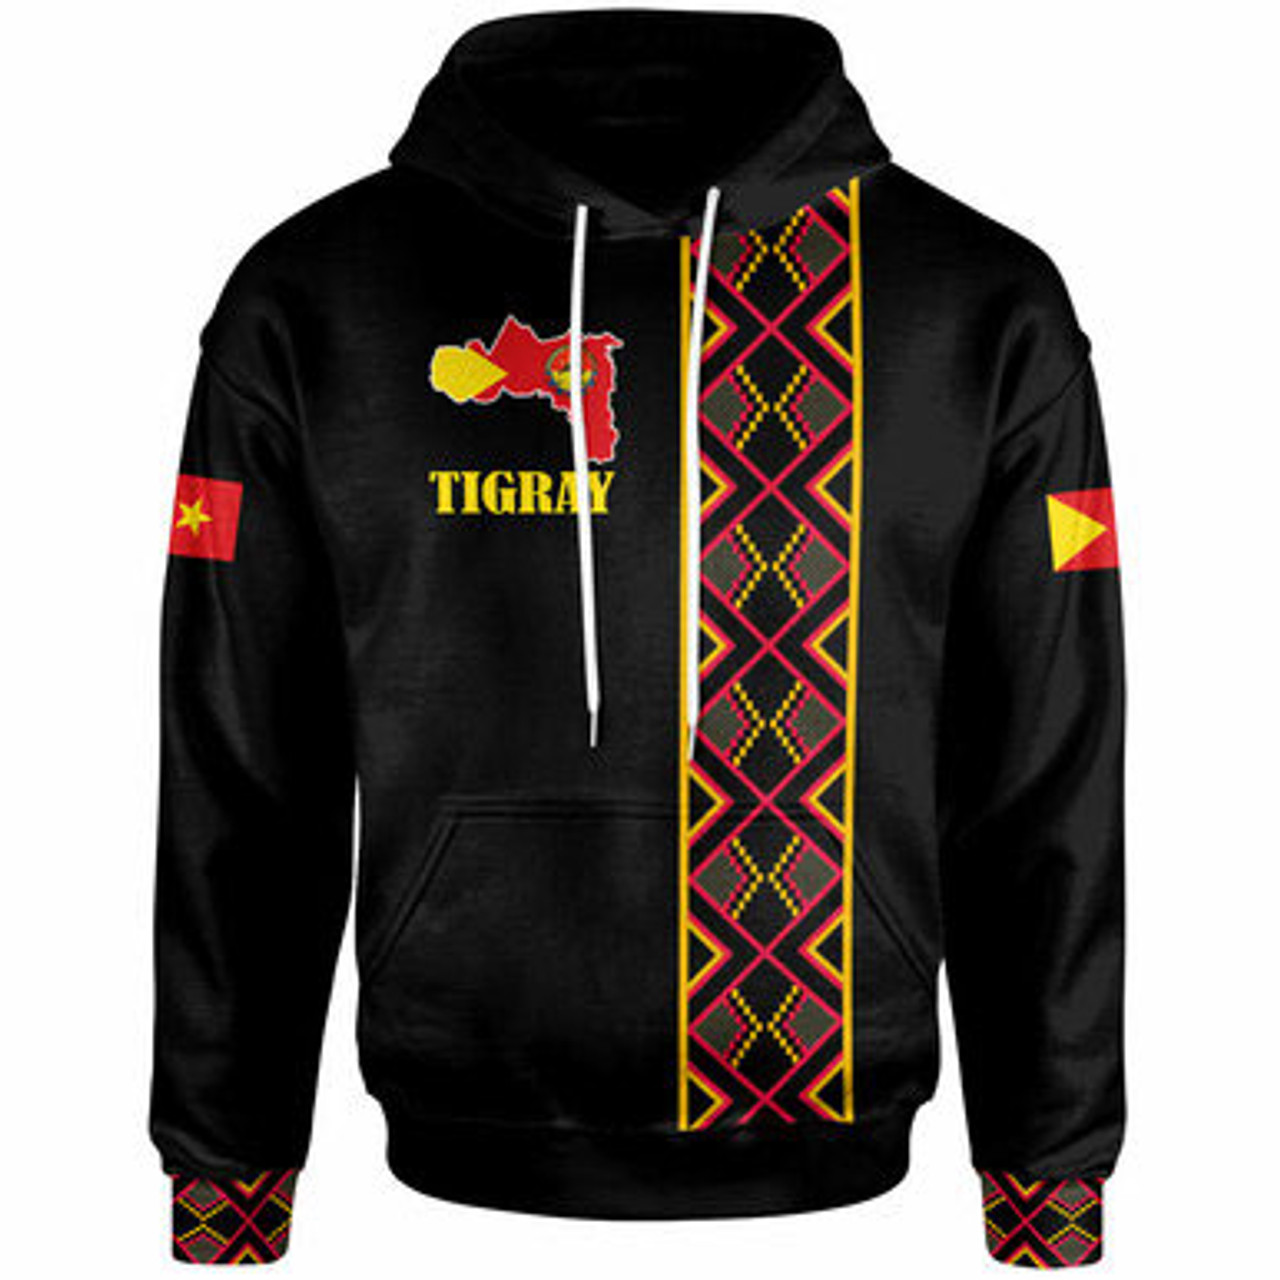 Tigray Hoodie - Africa Maps Africa Pattern Black Hoodie